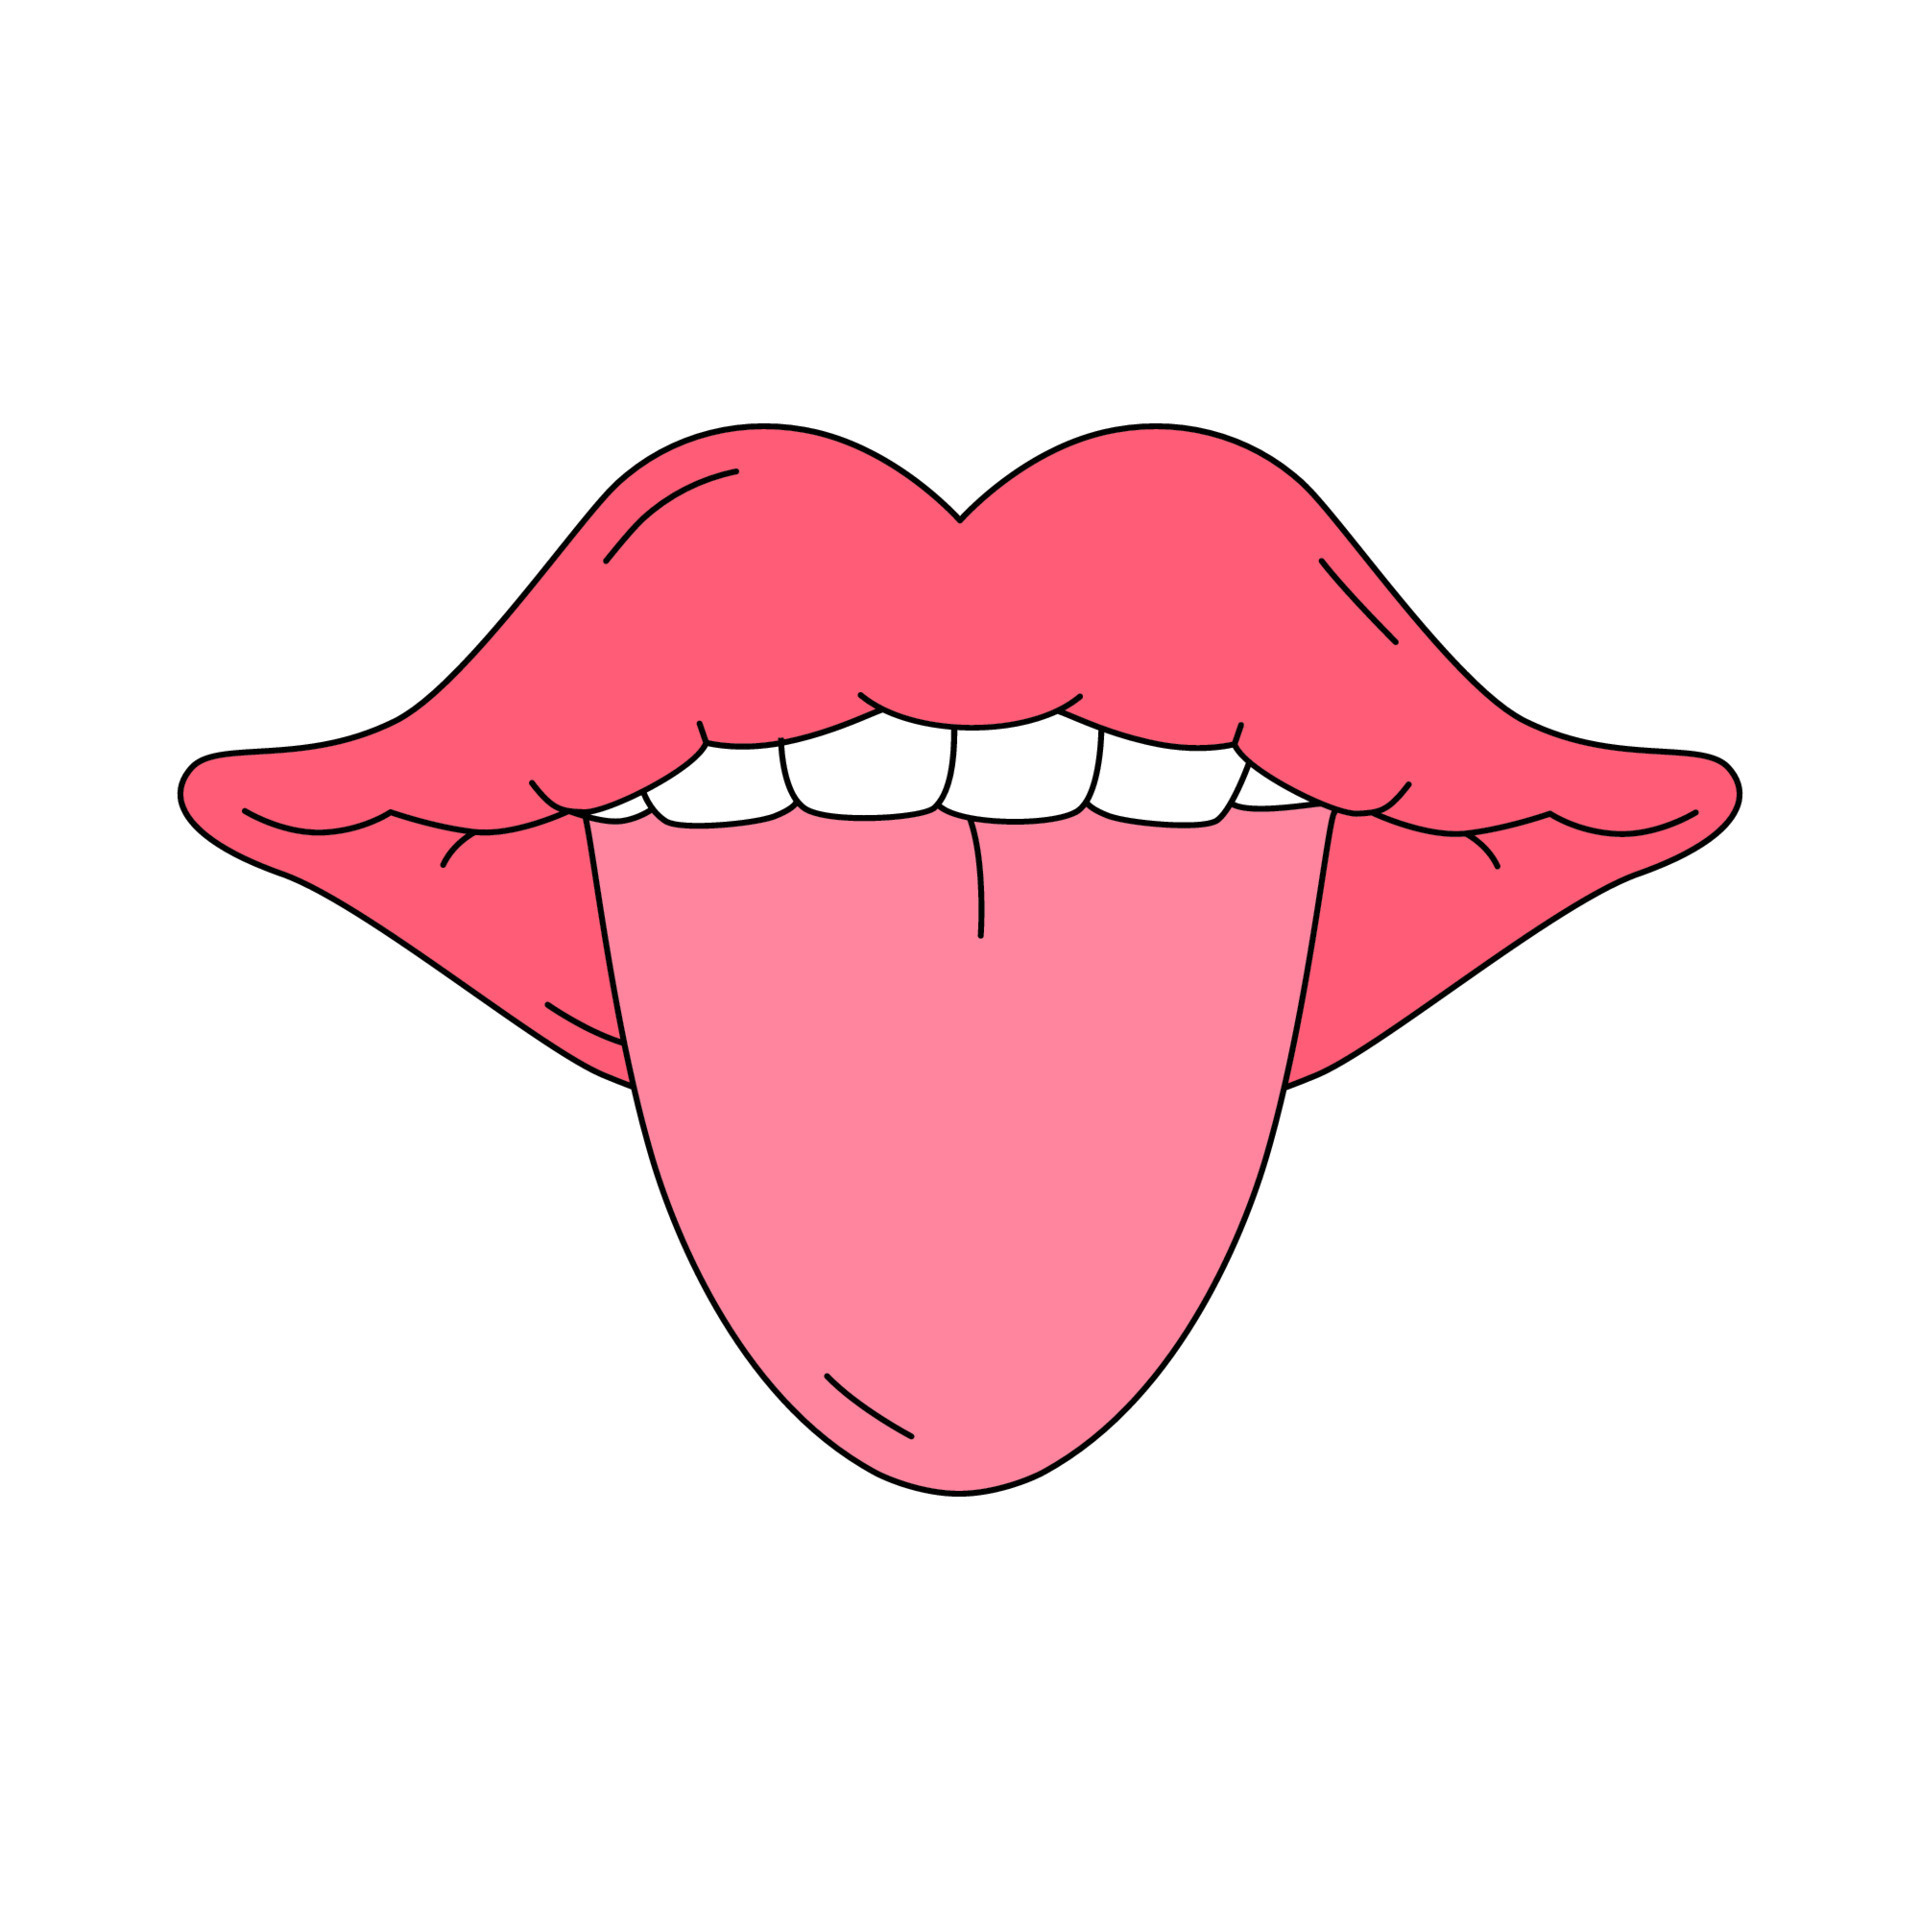 boca aberta com a língua de fora no estilo tradicional dos